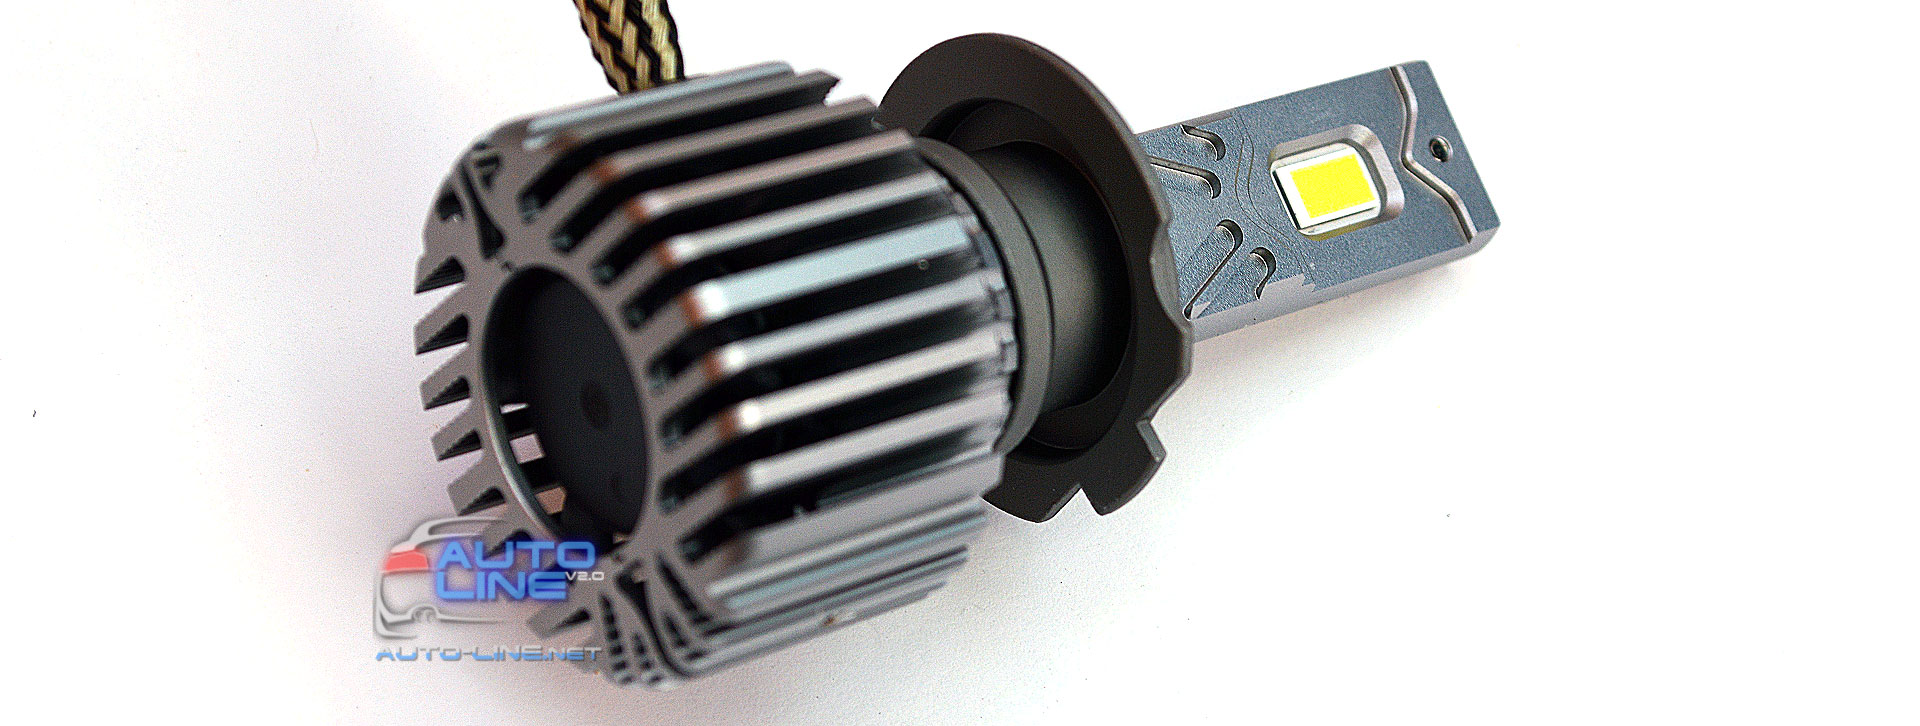 Cyclone LED H7/H18 5700K type 41 — мощная автомобильная LED-лампа H7 с обманкой